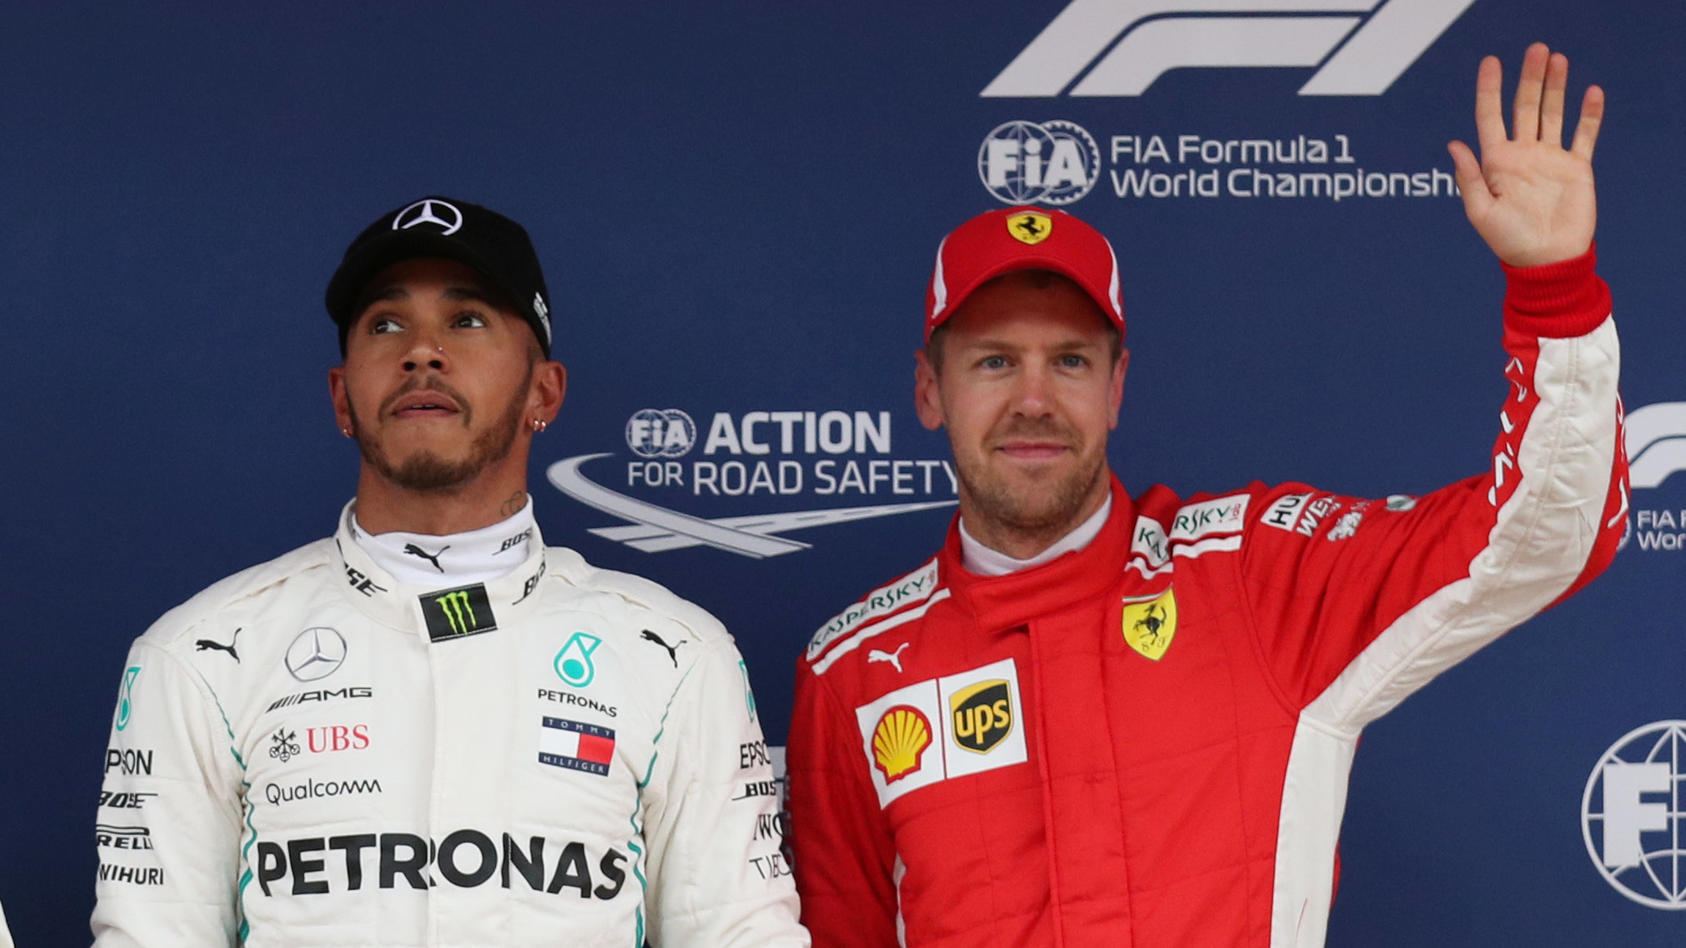 Holte seine 4. Barcelona-Pole: Lewis Hamilton (l.) - wartet weiter auf seine erste Startreihe 1 beim Spanien-GP: Sebastian Vettel